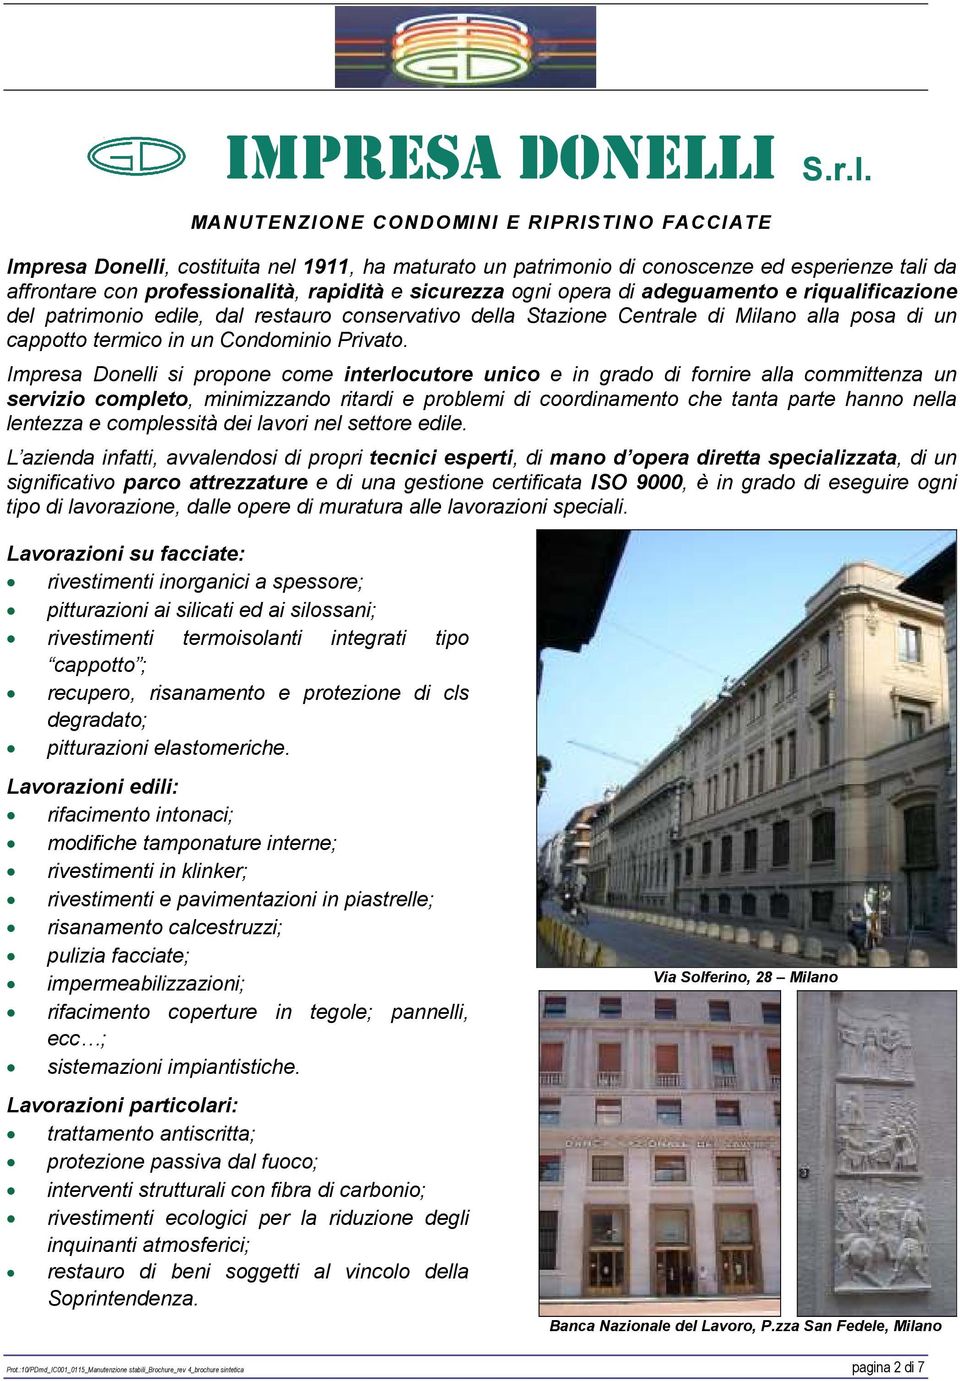 ogni opera di adeguamento e riqualificazione del patrimonio edile, dal restauro conservativo della Stazione Centrale di Milano alla posa di un cappotto termico in un Condominio Privato.